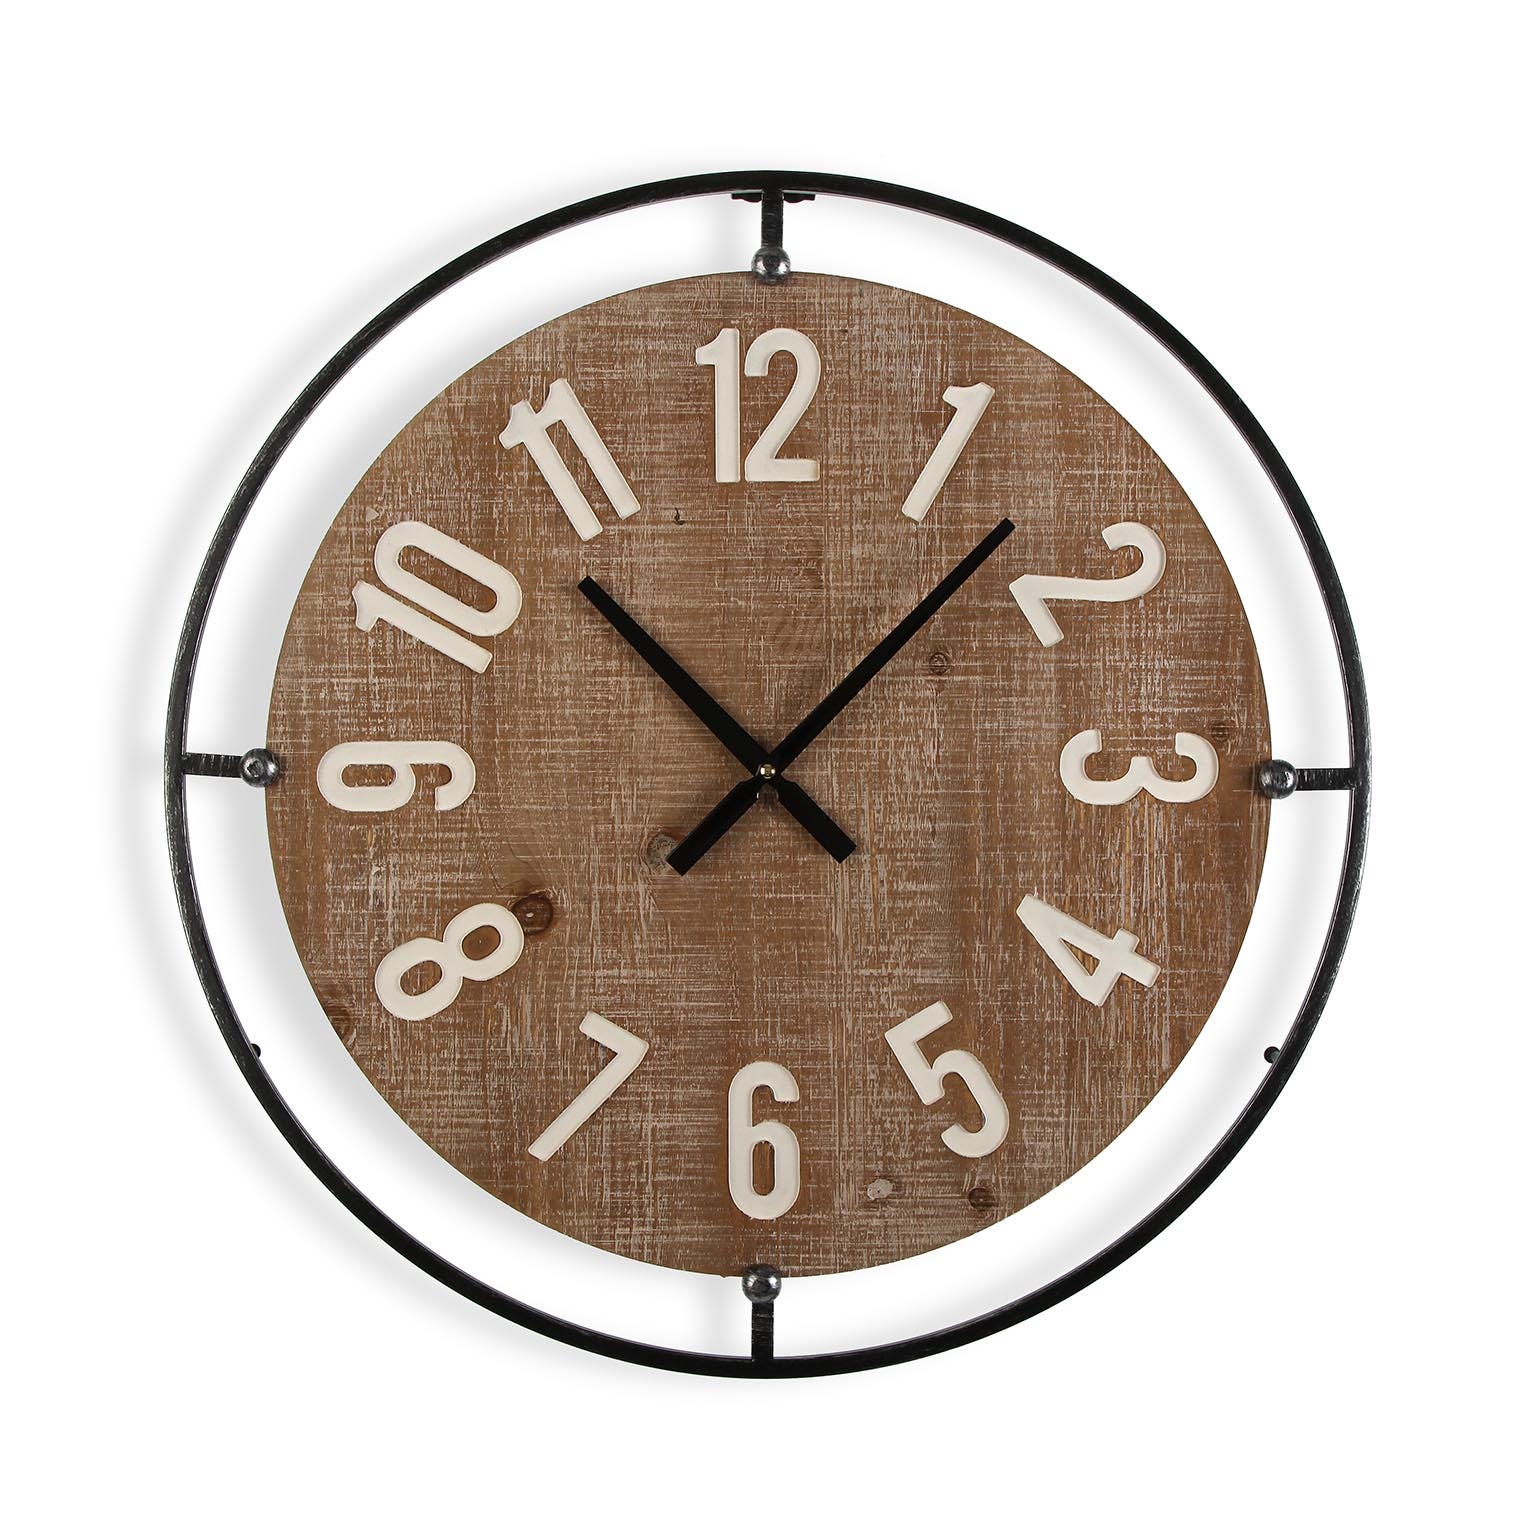 Versa Caussade Reloj de Pared Decorativo para la Cocina, el Salón, el  Comedor o la Habitación